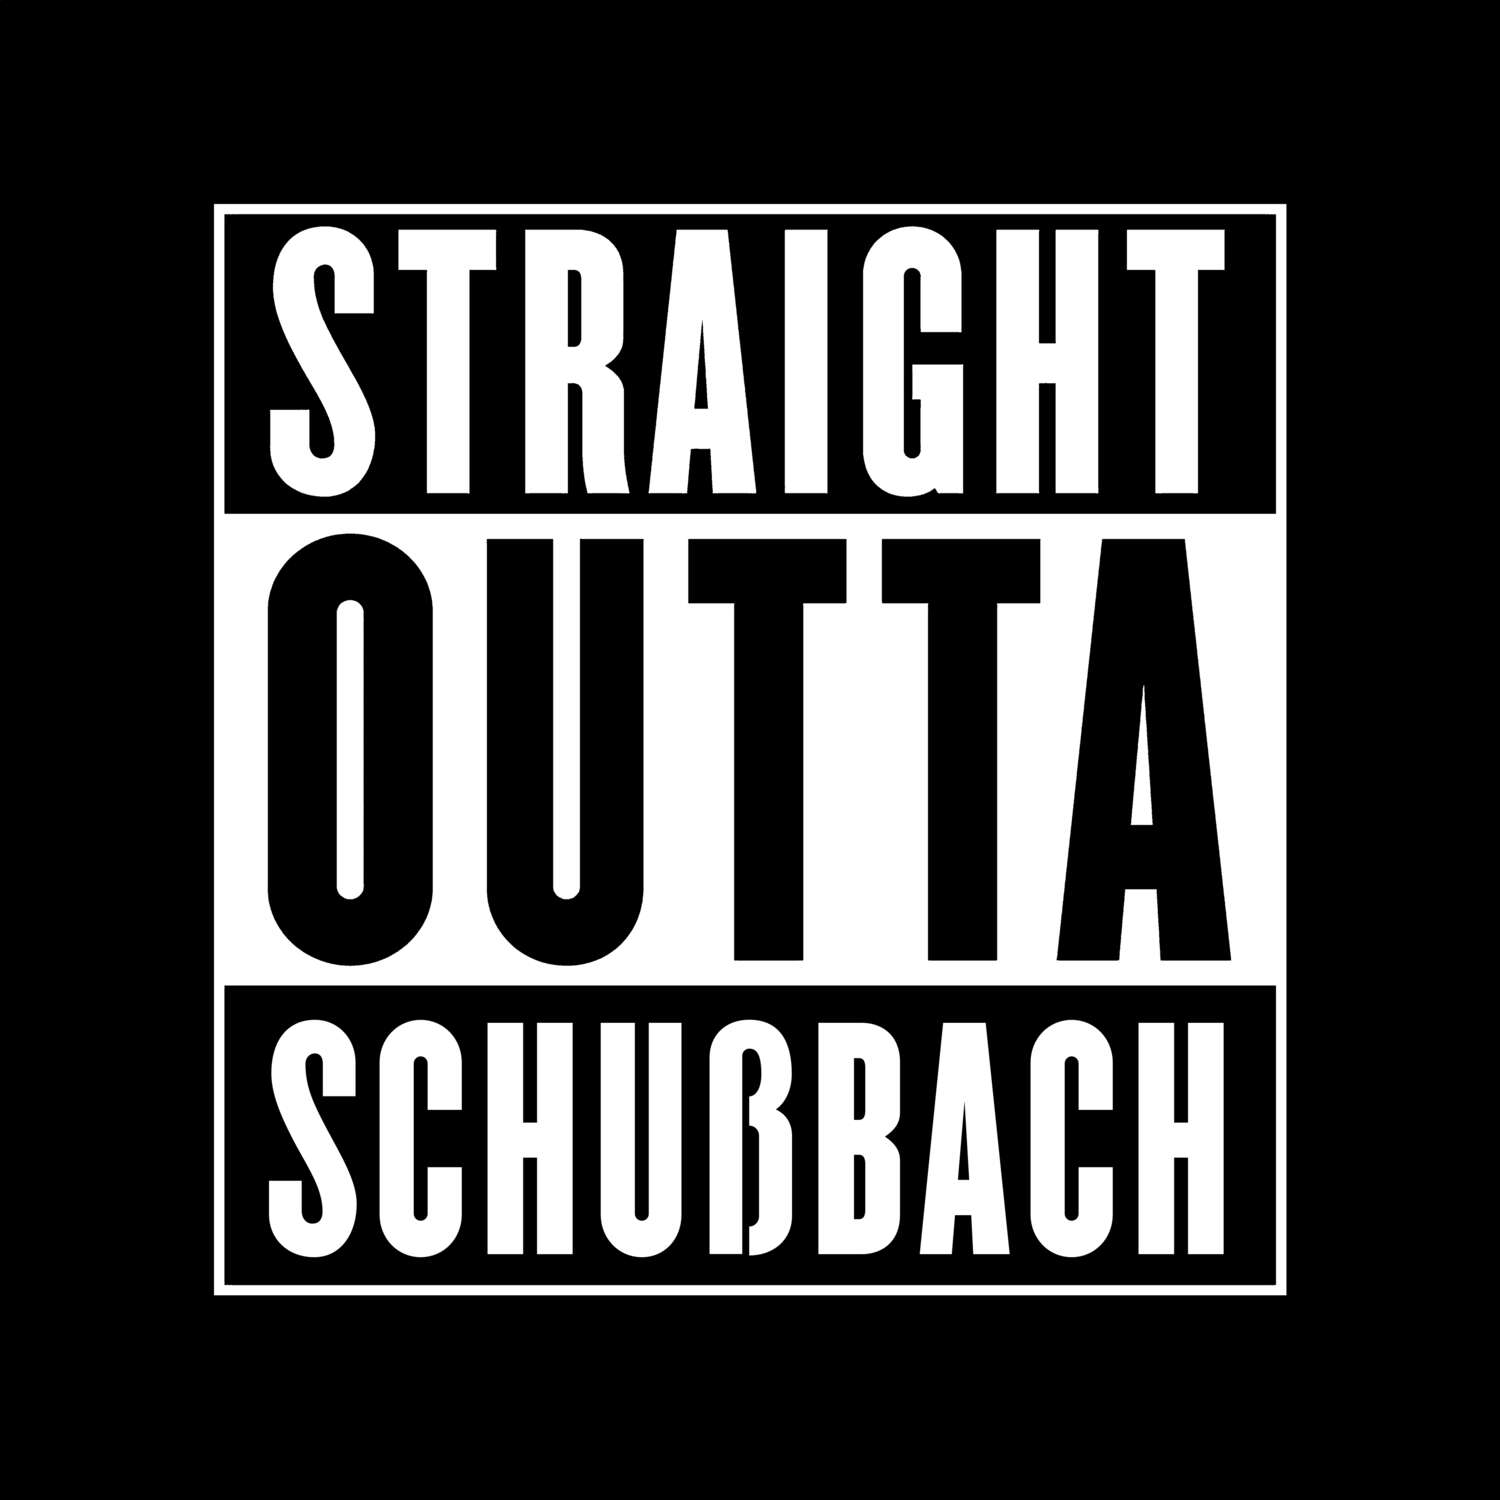 Schußbach T-Shirt »Straight Outta«